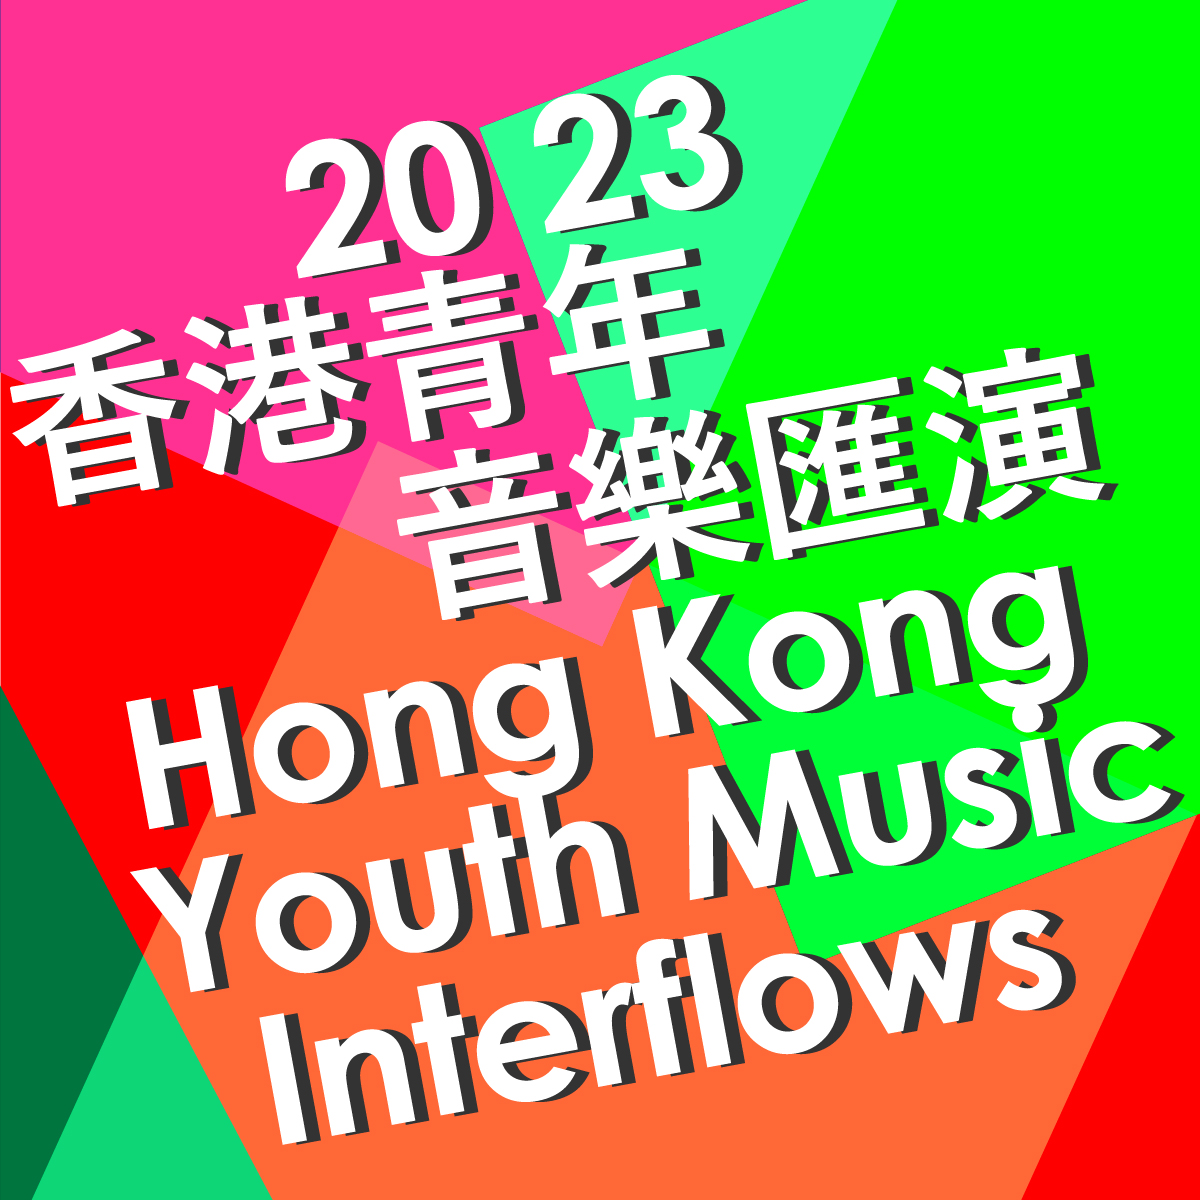 2023 Hong Kong Youth Music Interflows